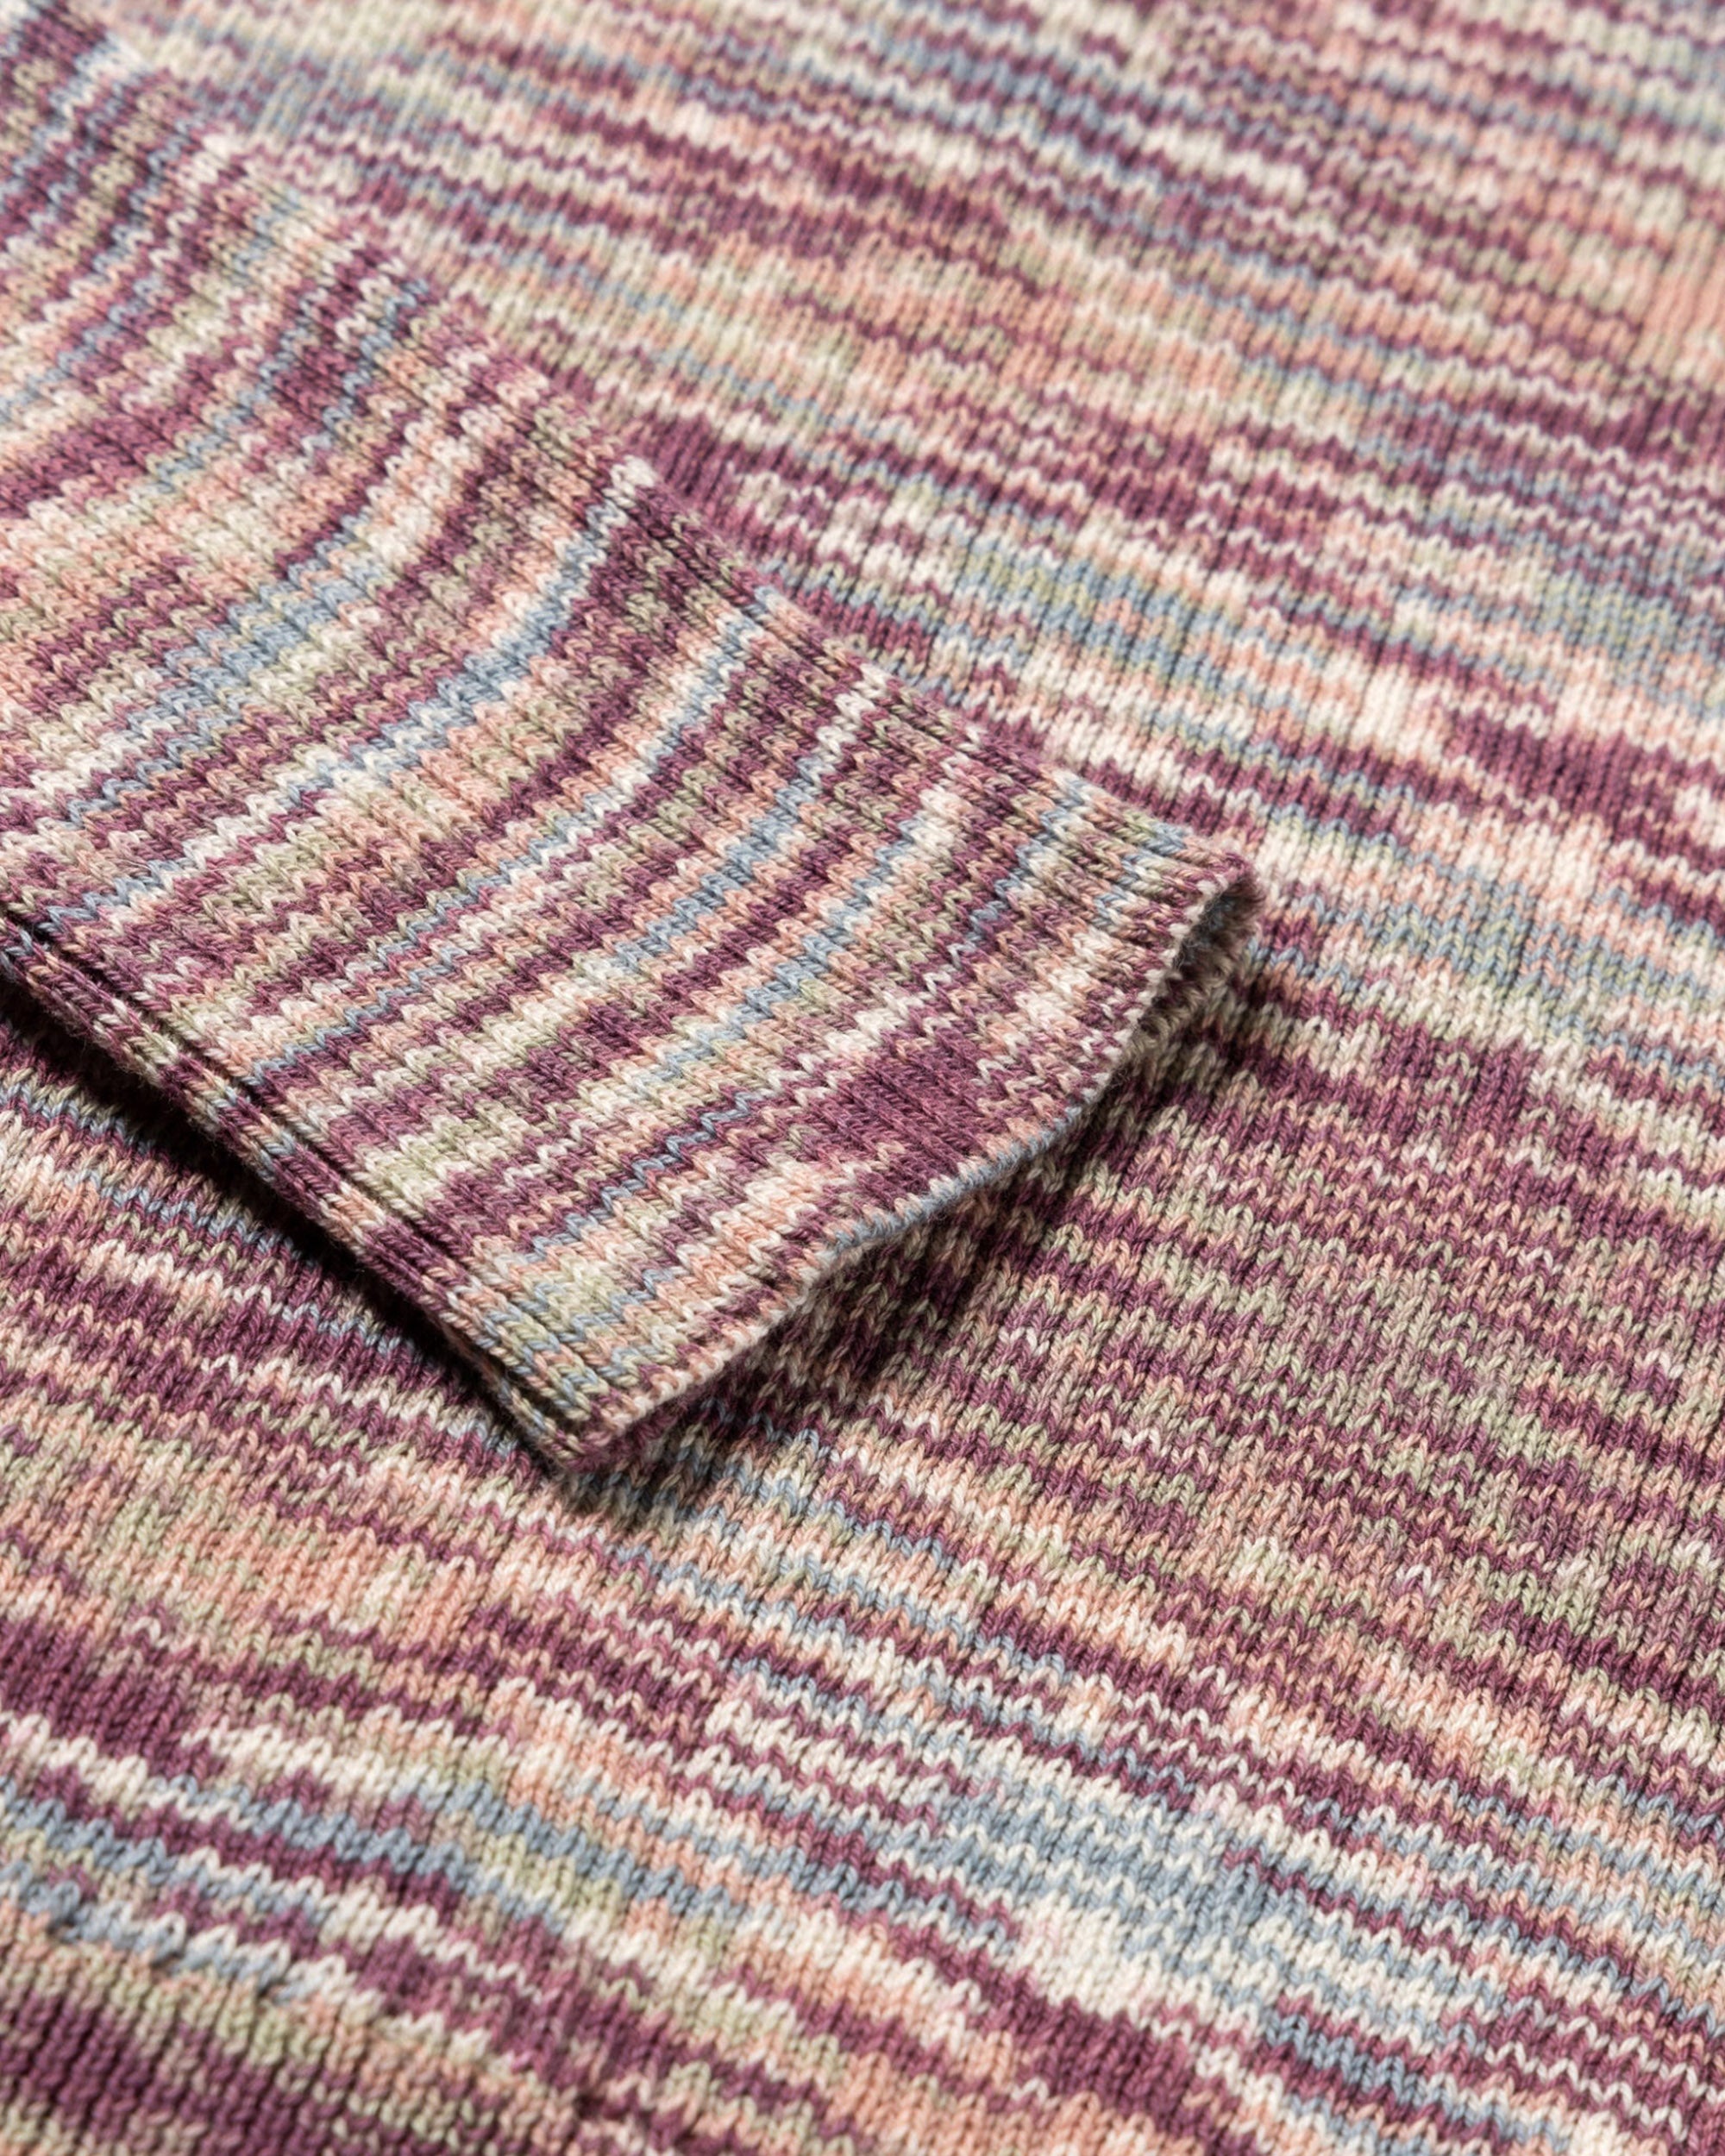 Holey Shrunken Space Dye Knit - Lilac